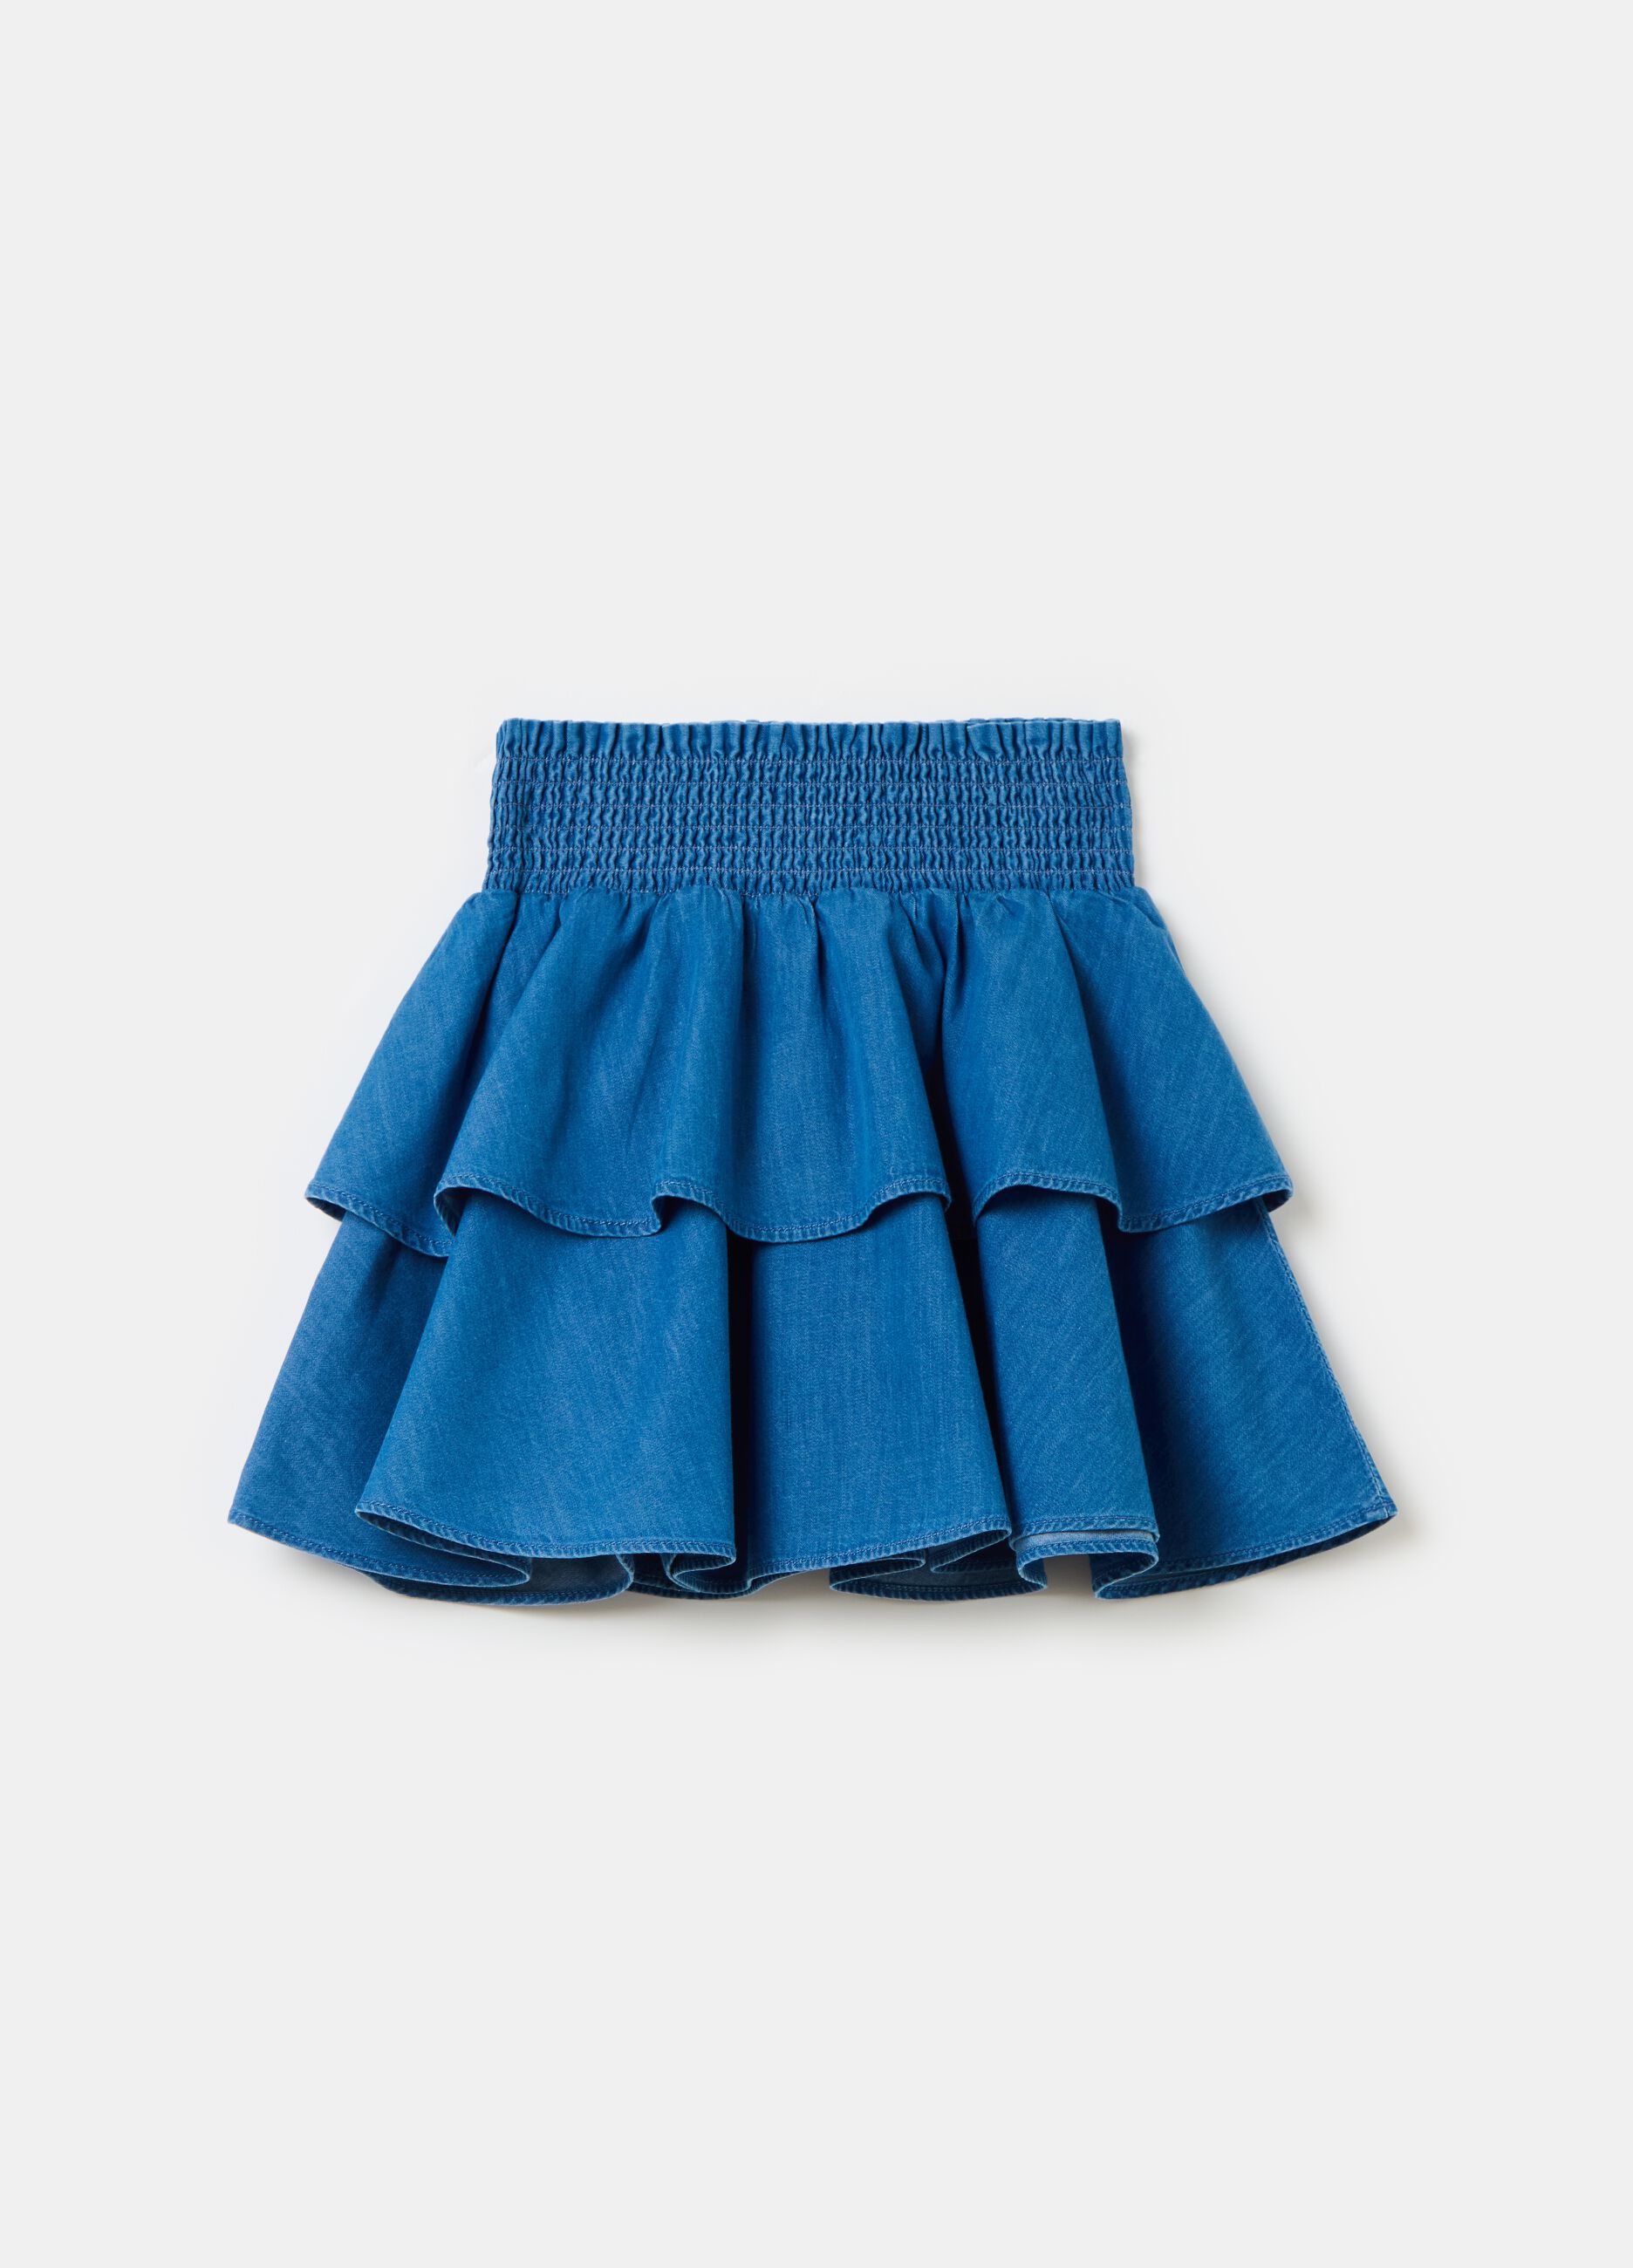 Denim skirt with flounce